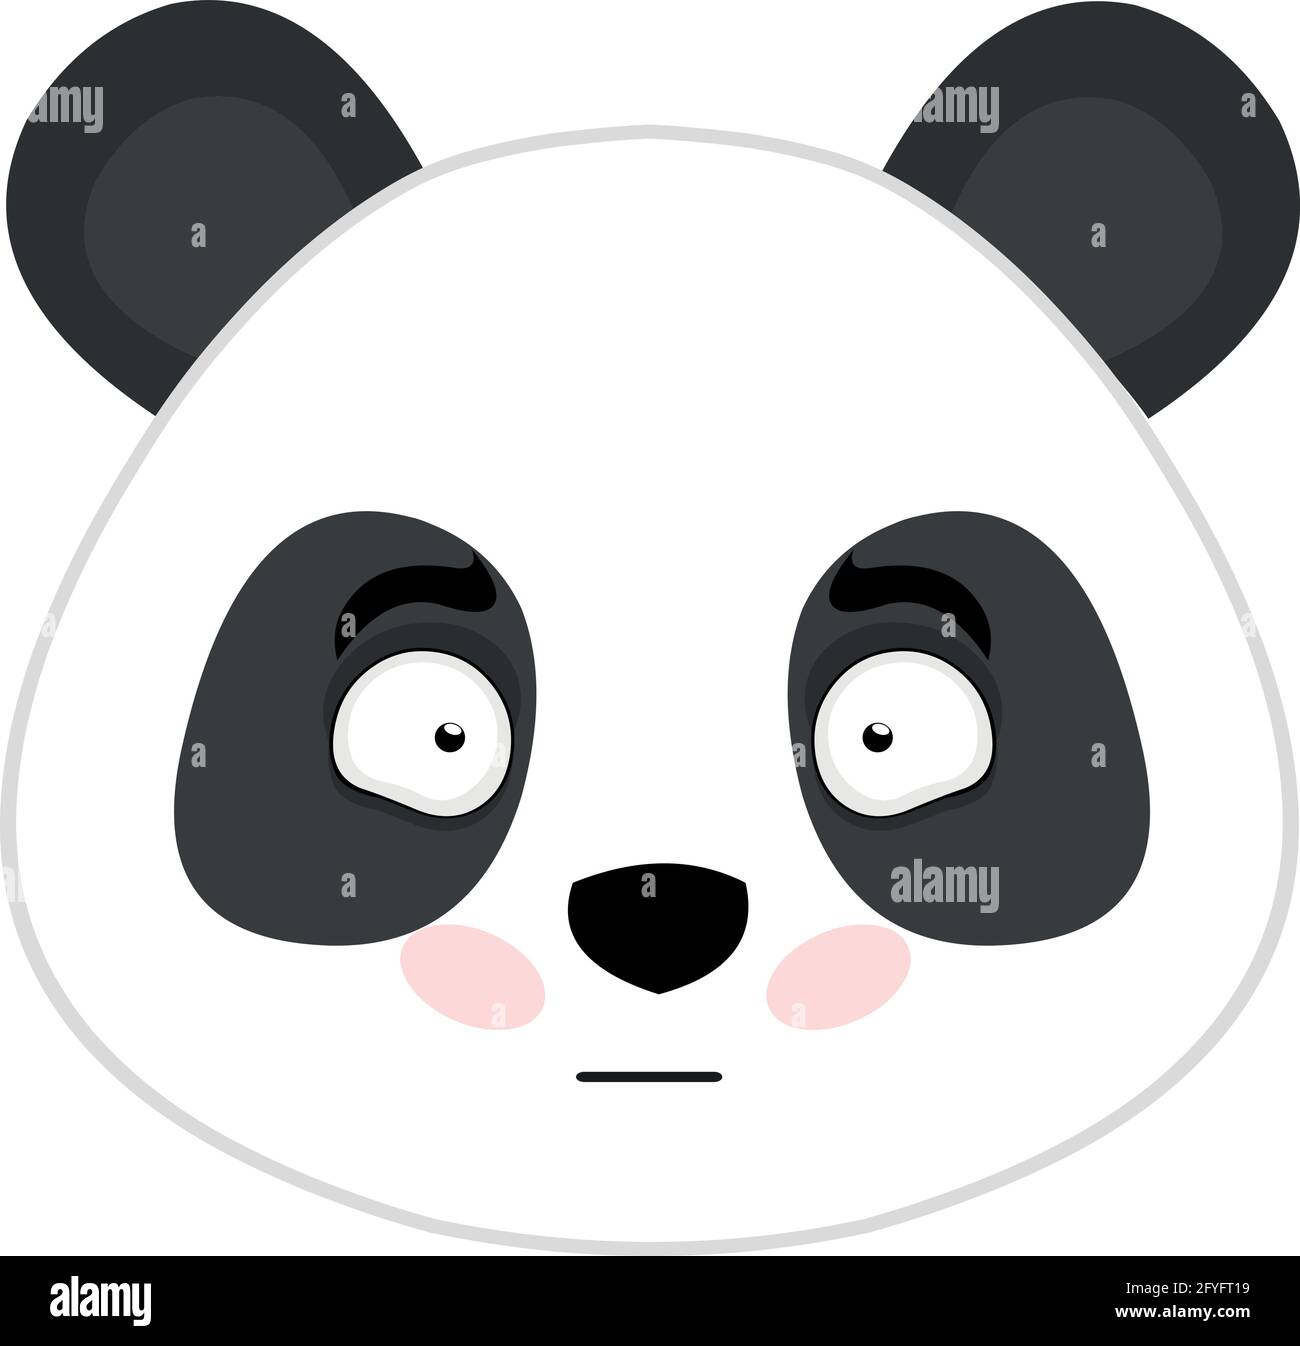 Vettore emoticon illustrazione del volto di un panda cartoon abbi con un arrossire sul viso Illustrazione Vettoriale